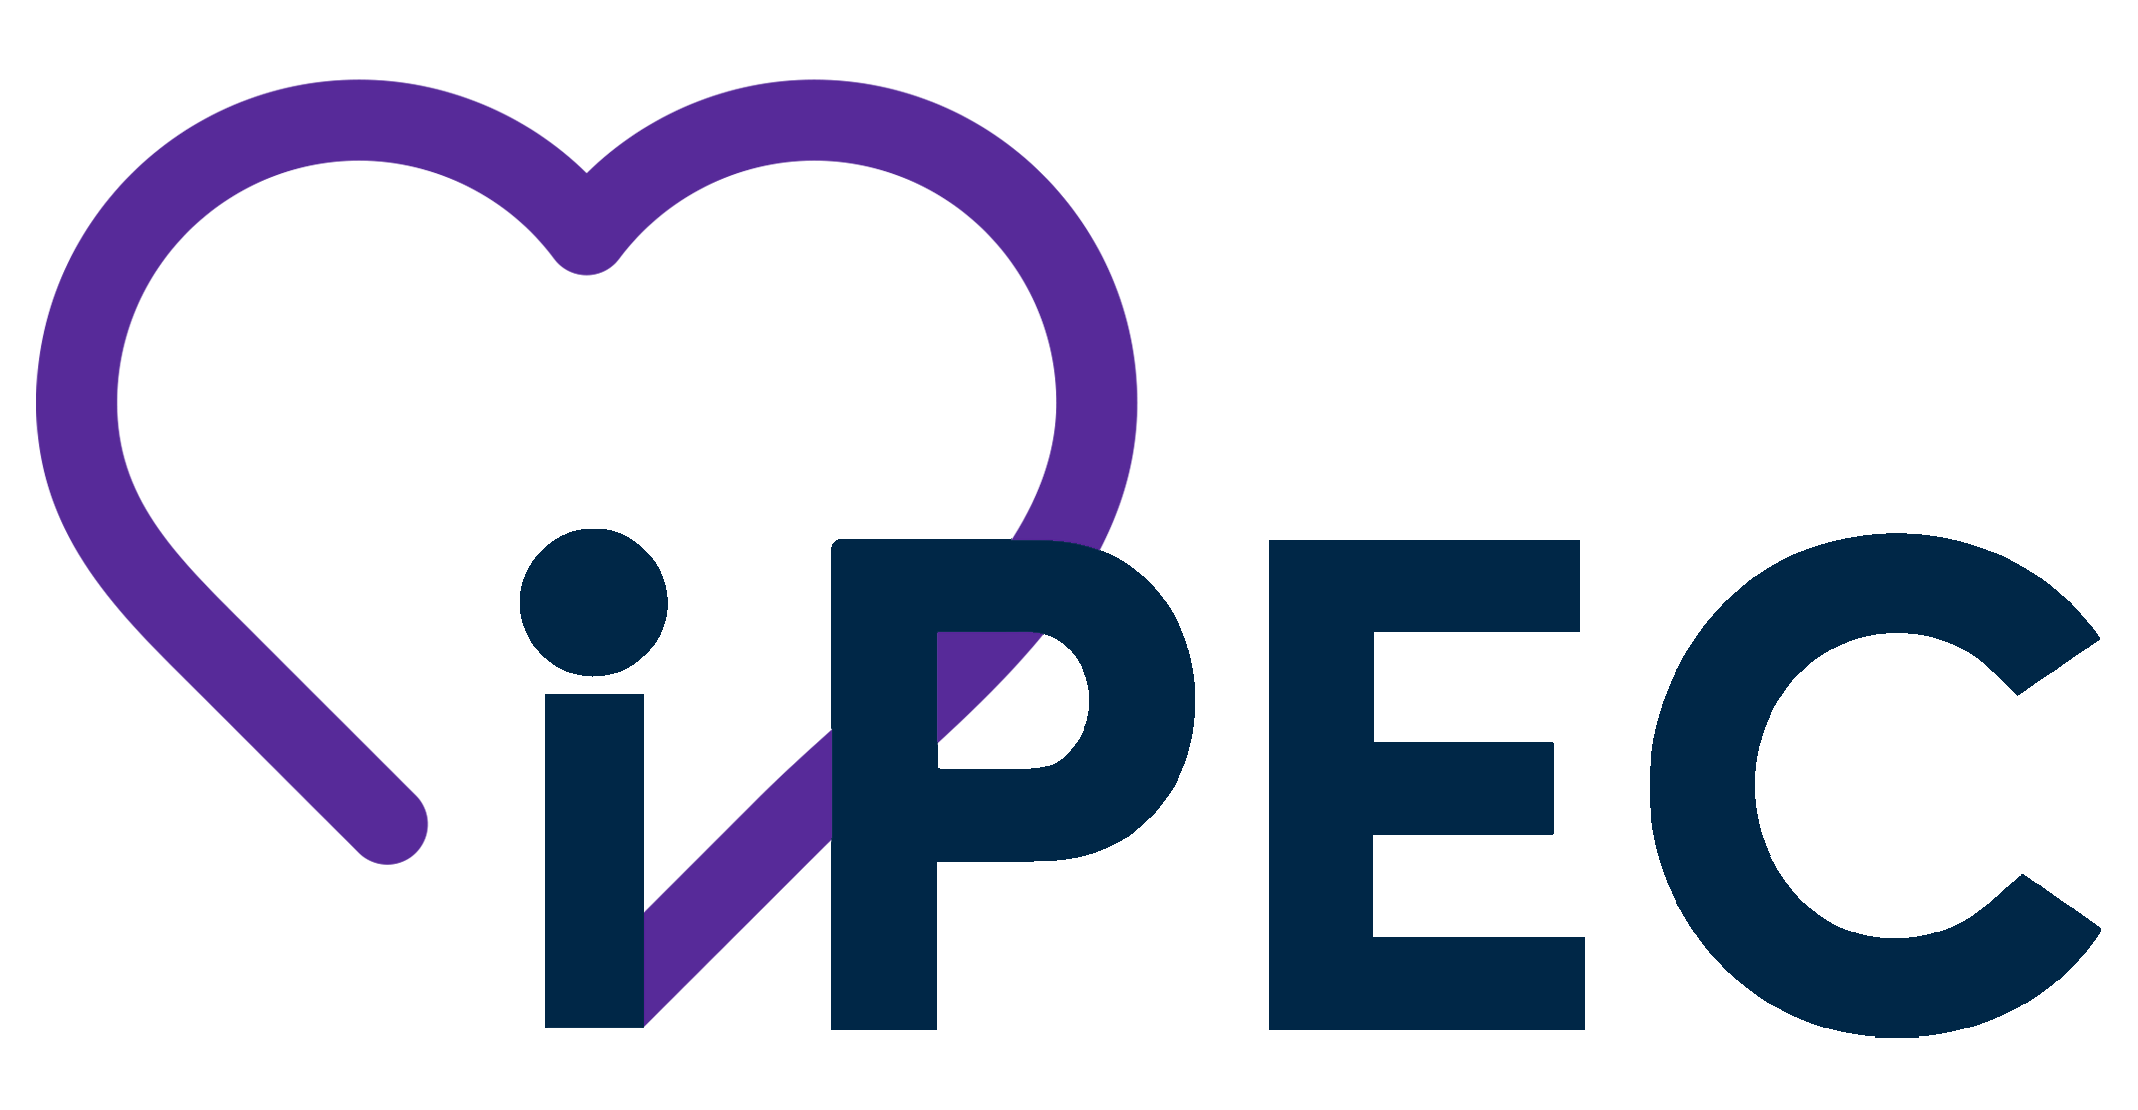 iPEC logo